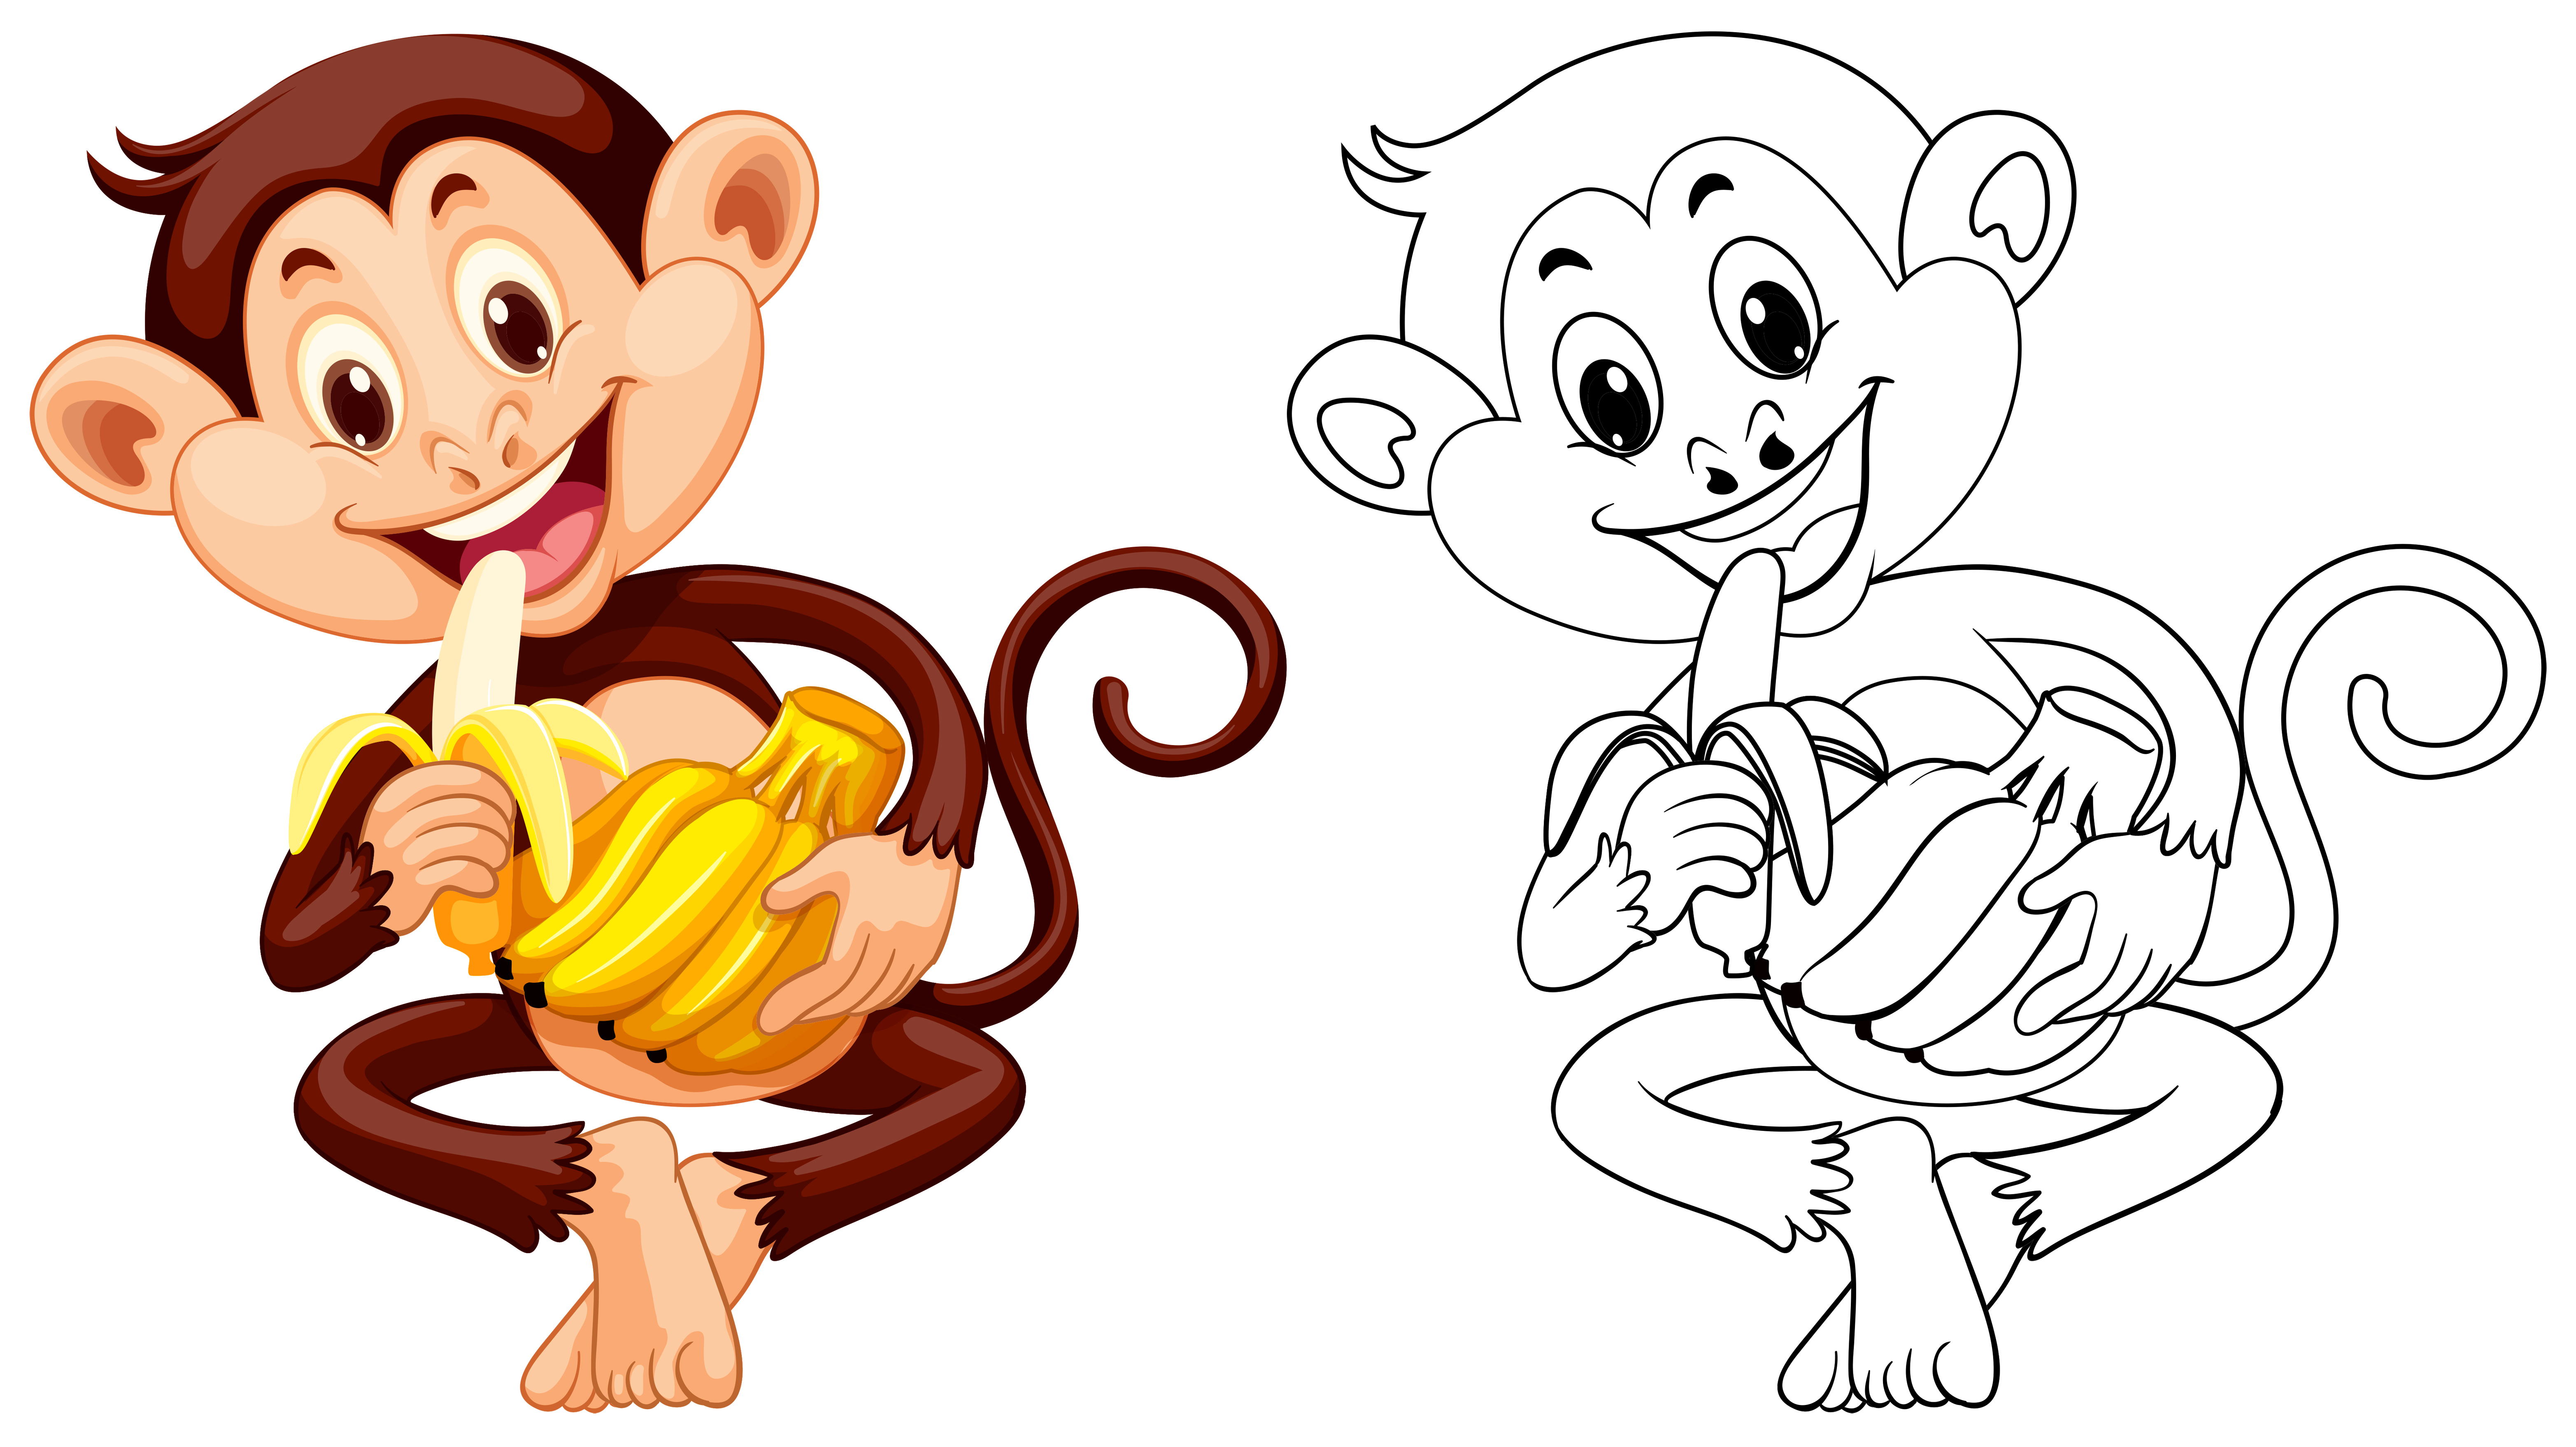 animal-outline-for-monkey-eating-banana-447076-vector-art-at-vecteezy